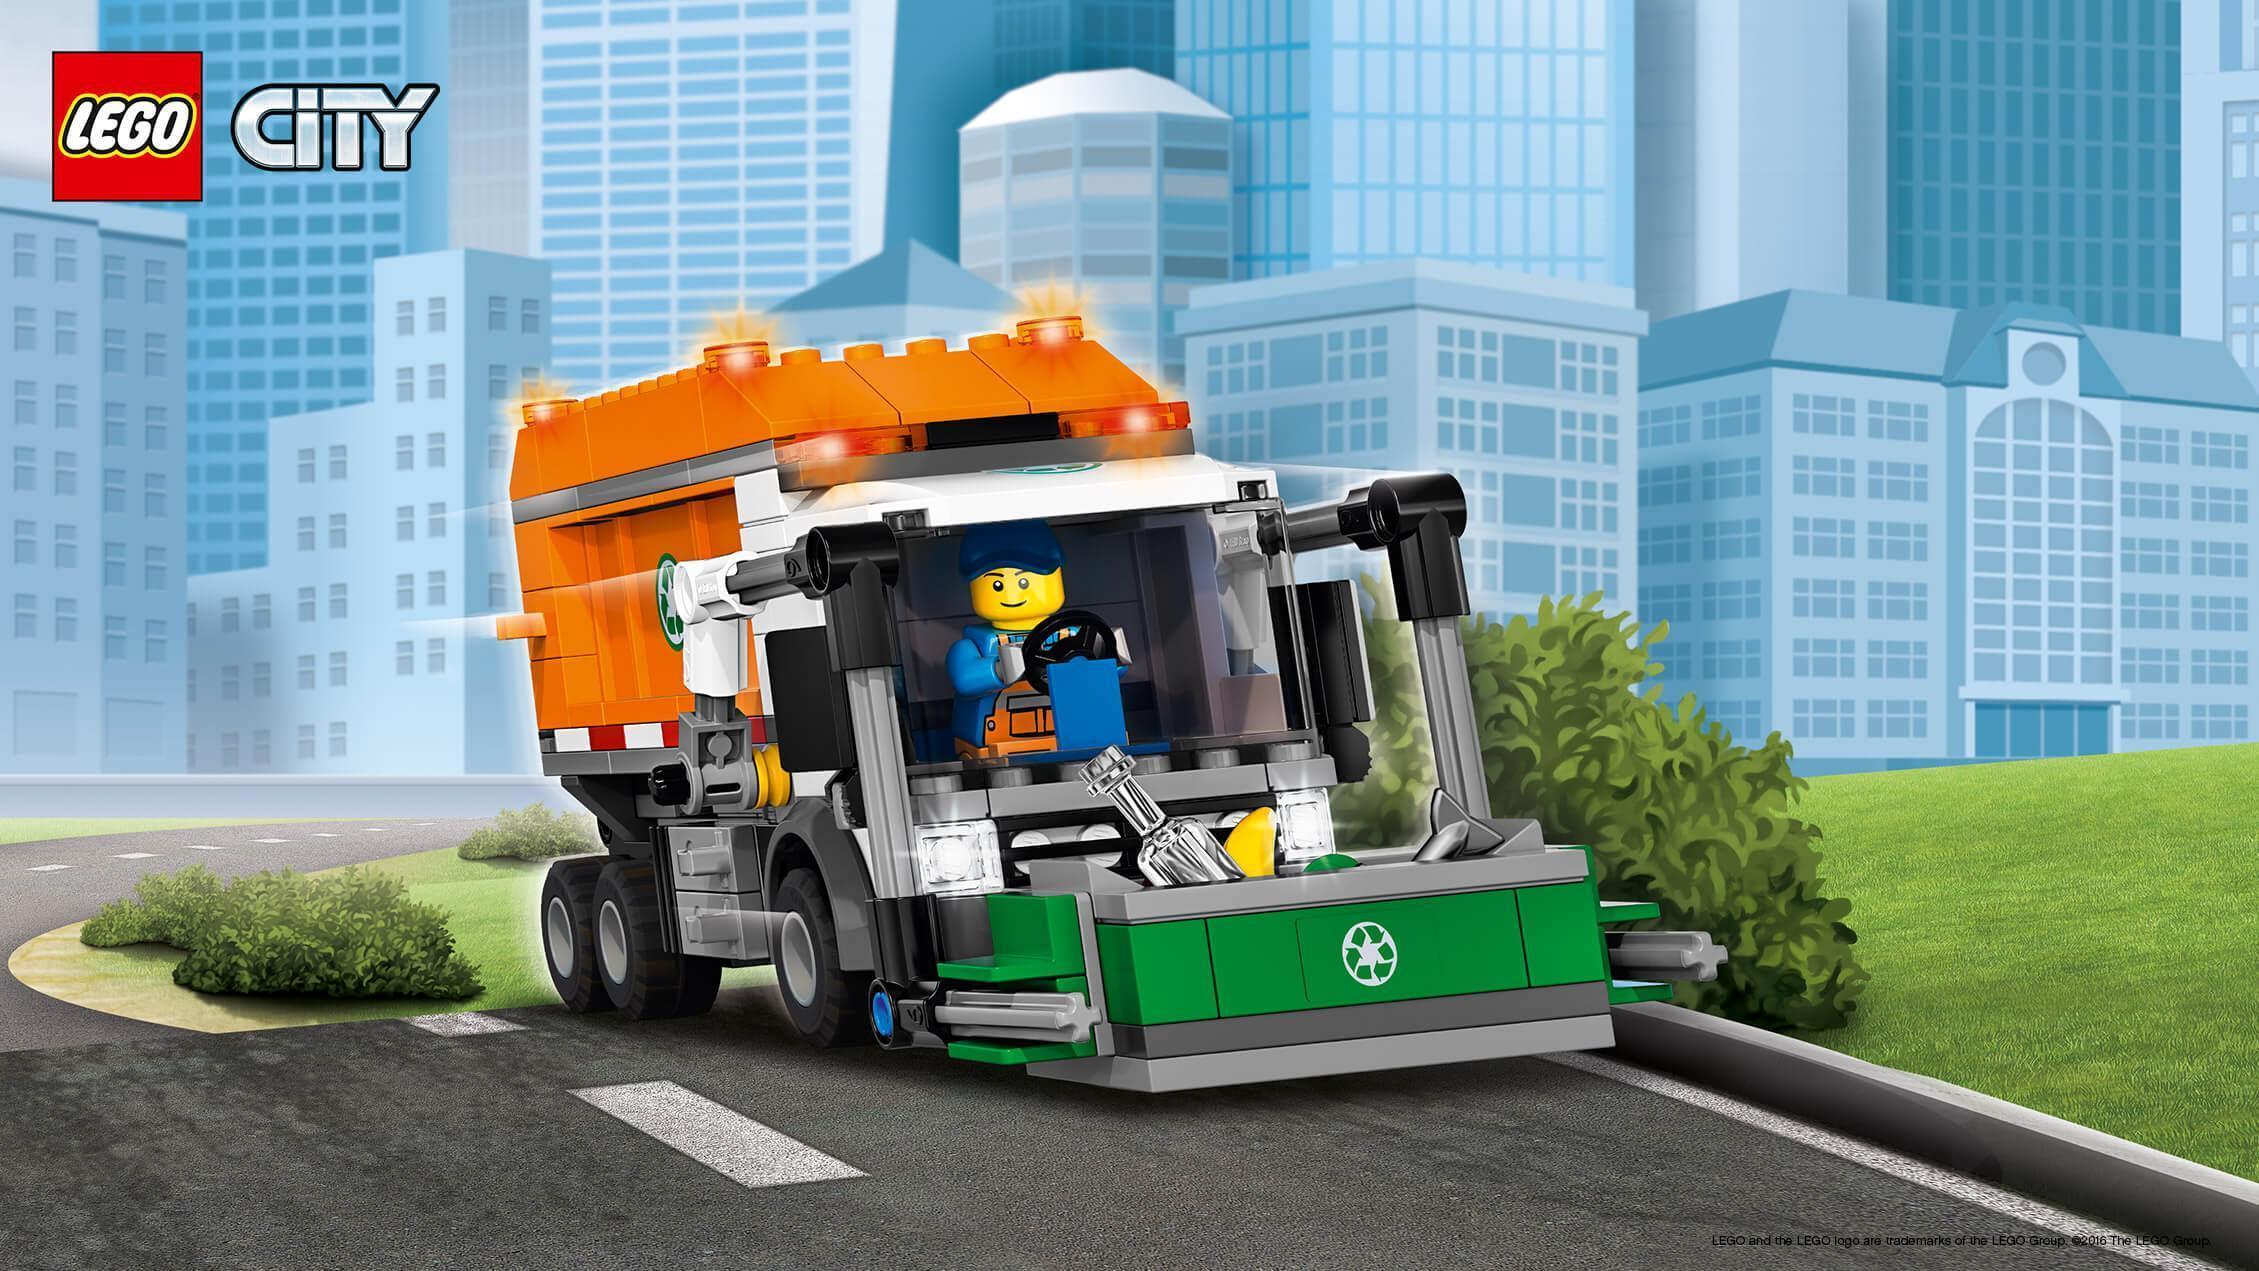 LEGO City 6013